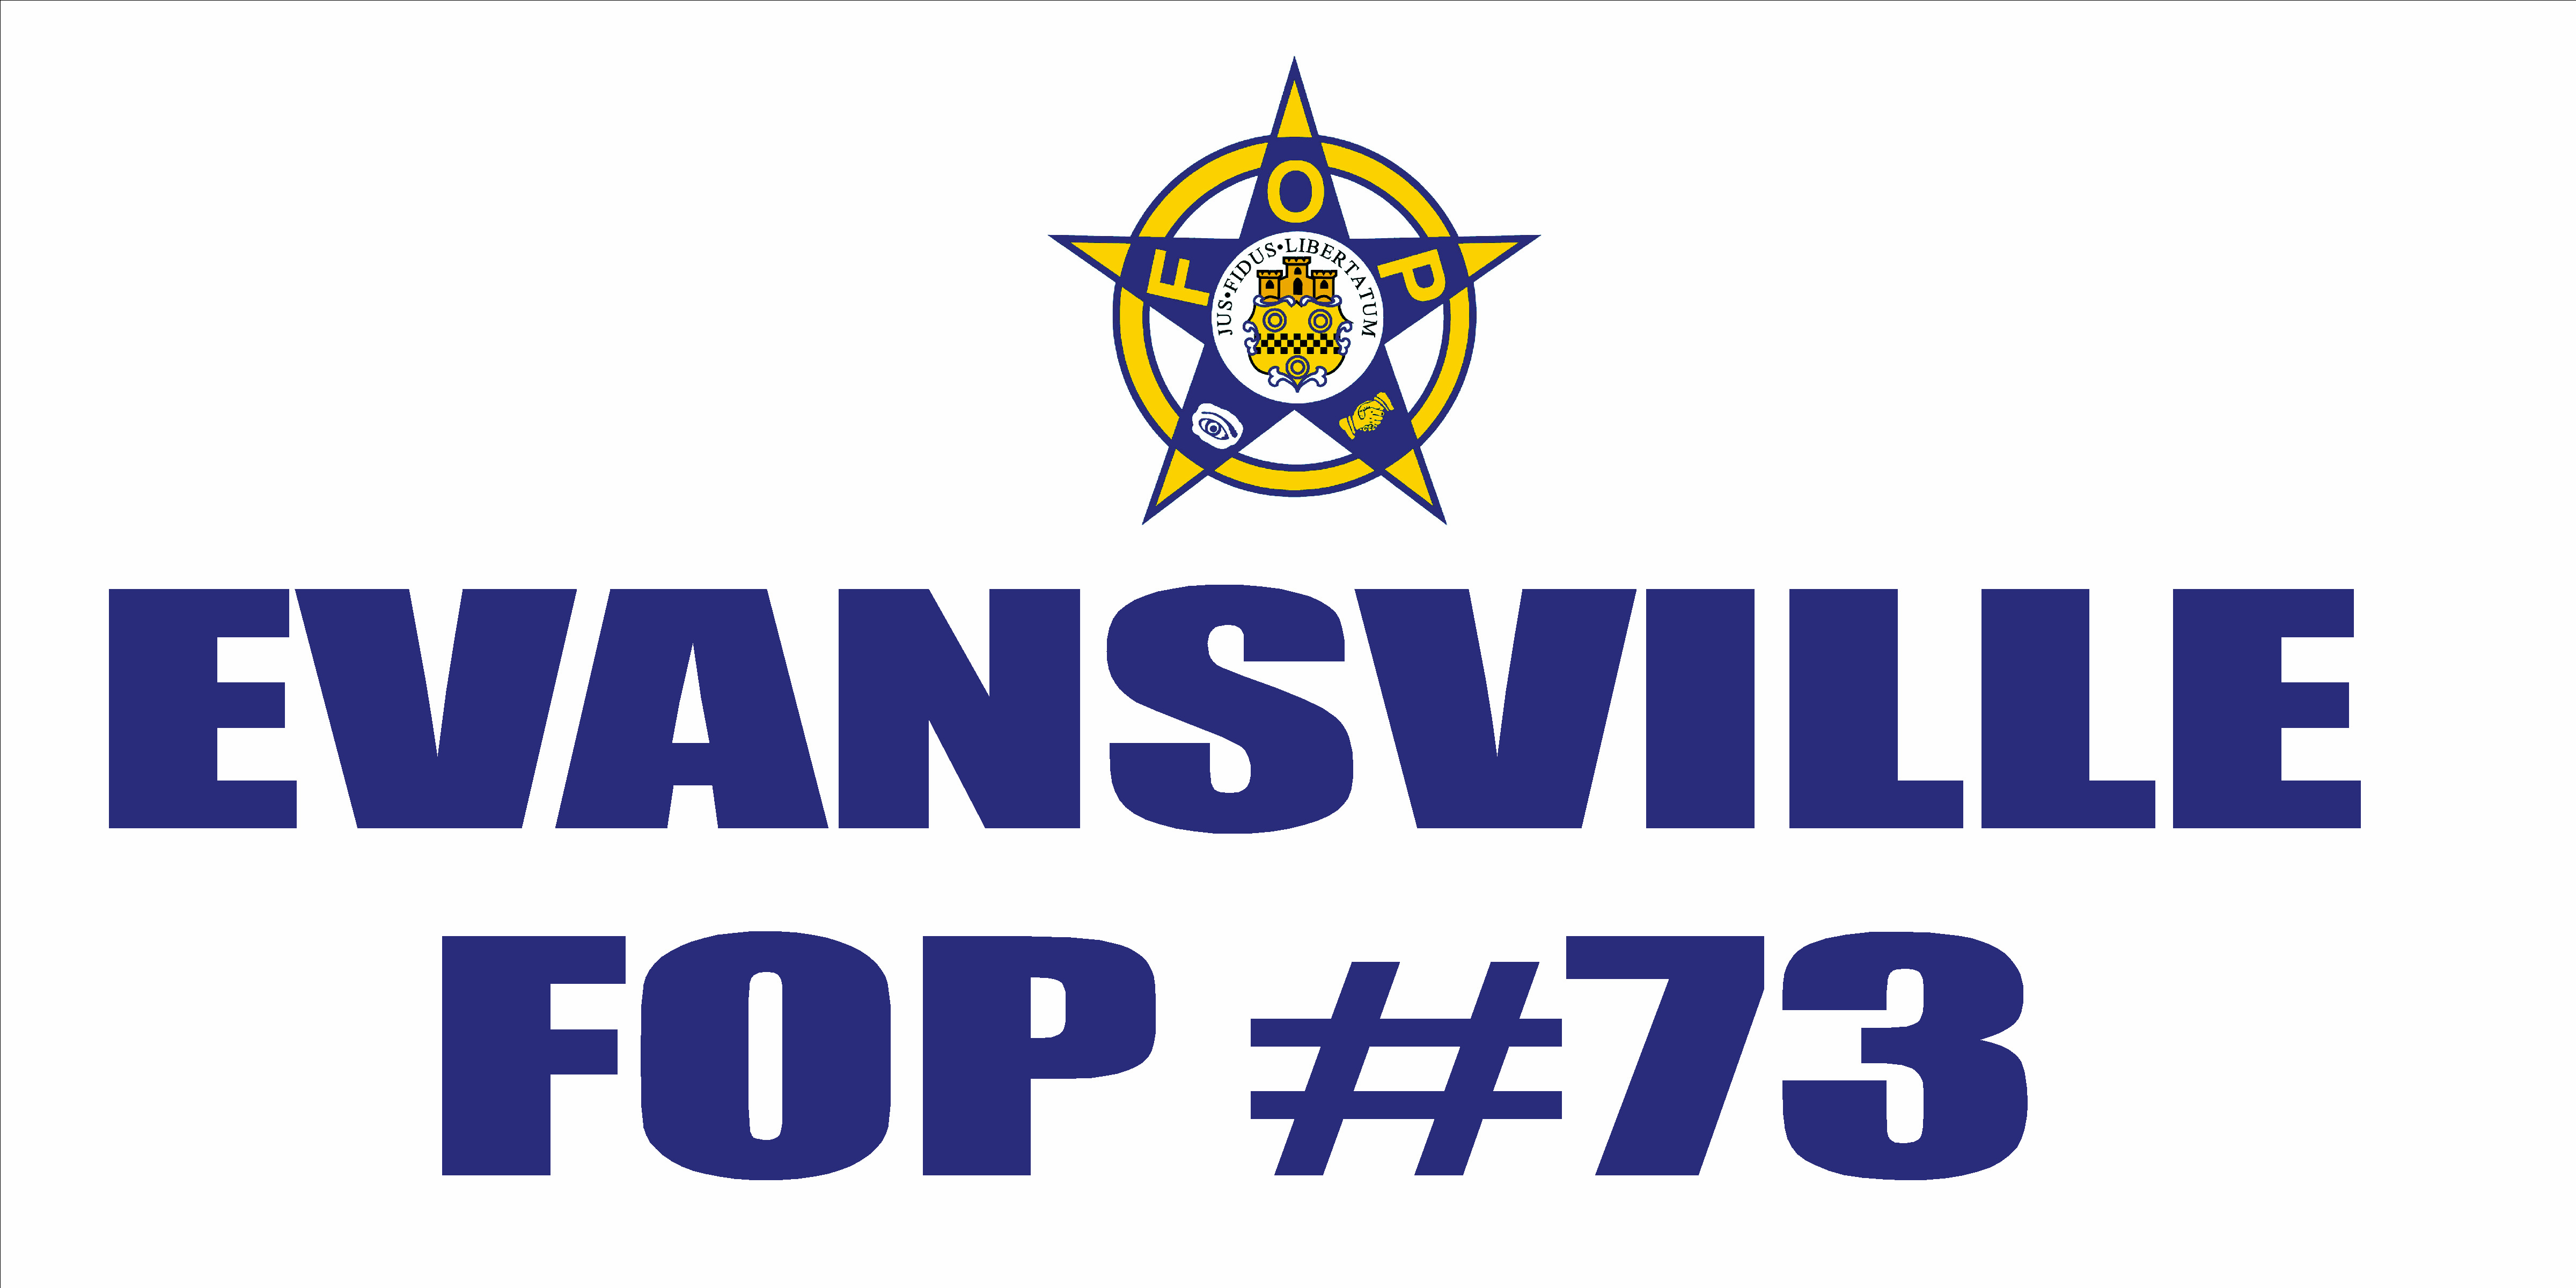 Evansville-City-Police-73